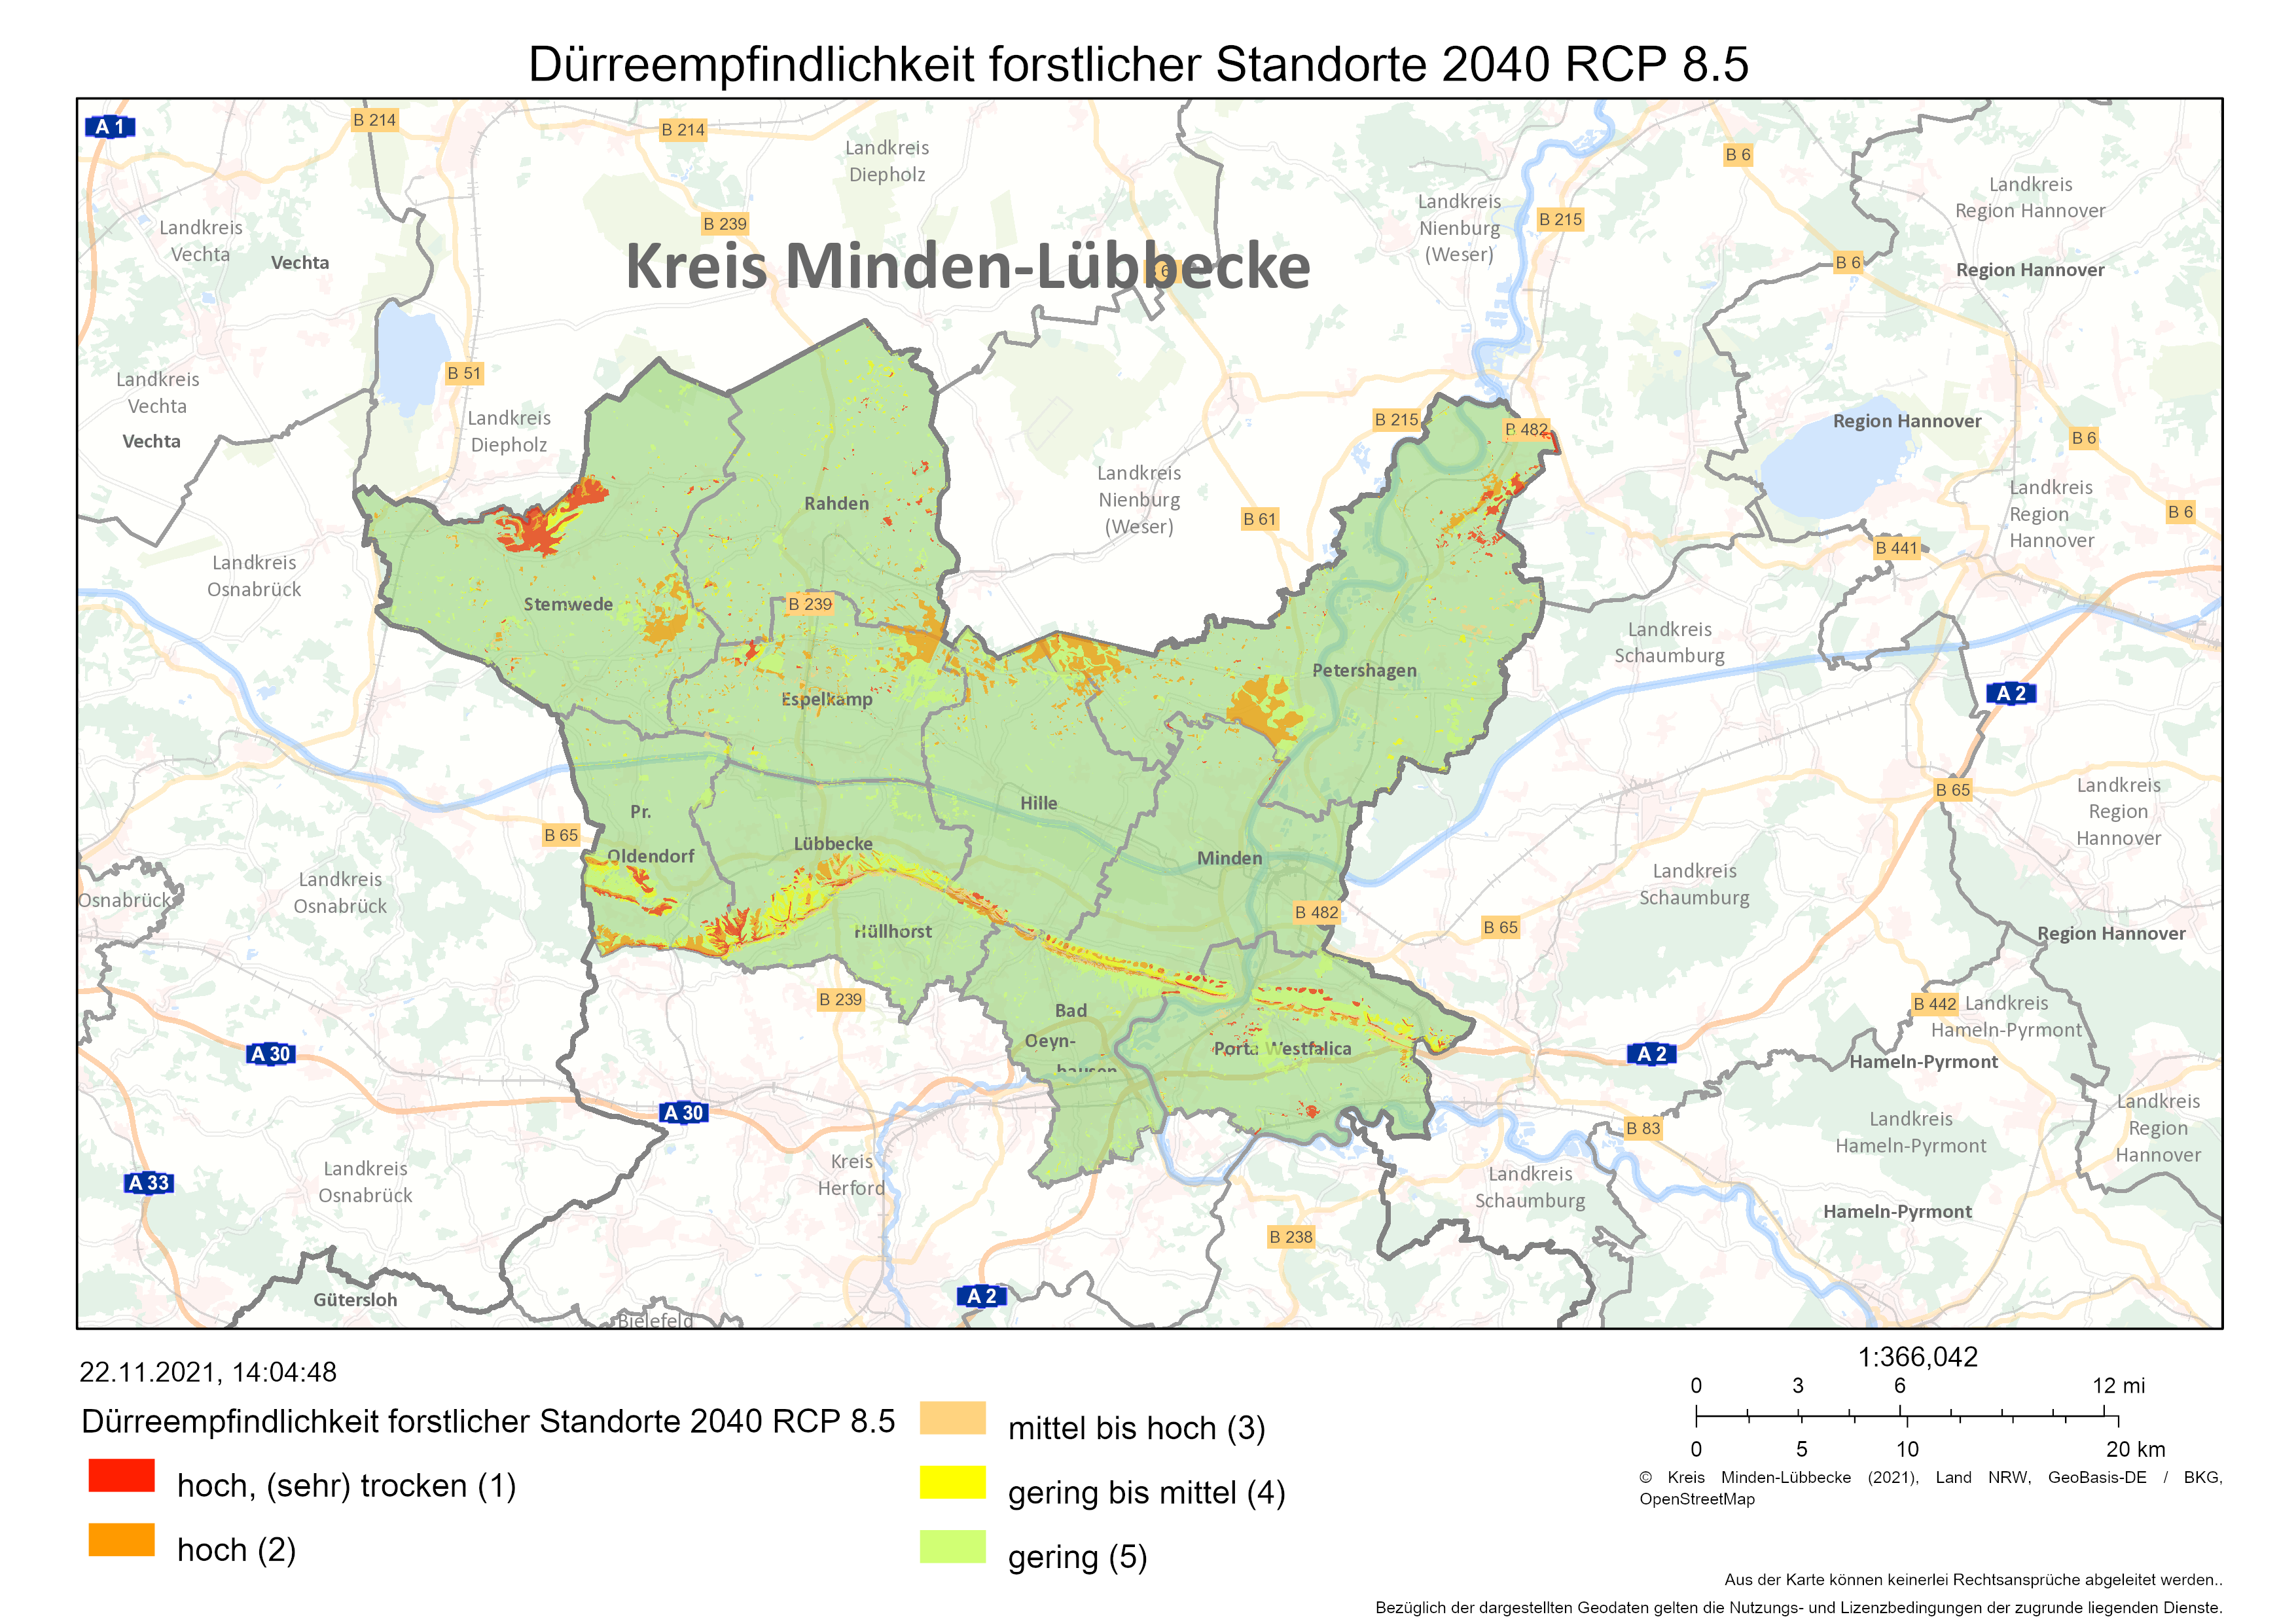 DÃ¼rreempfindlichkeit forstlicher Standorte 2040 | RCP 8.5 (Quelle: Wald & Holz NRW, LANUV NRW & Kreis Minden-LÃ¼bbecke)